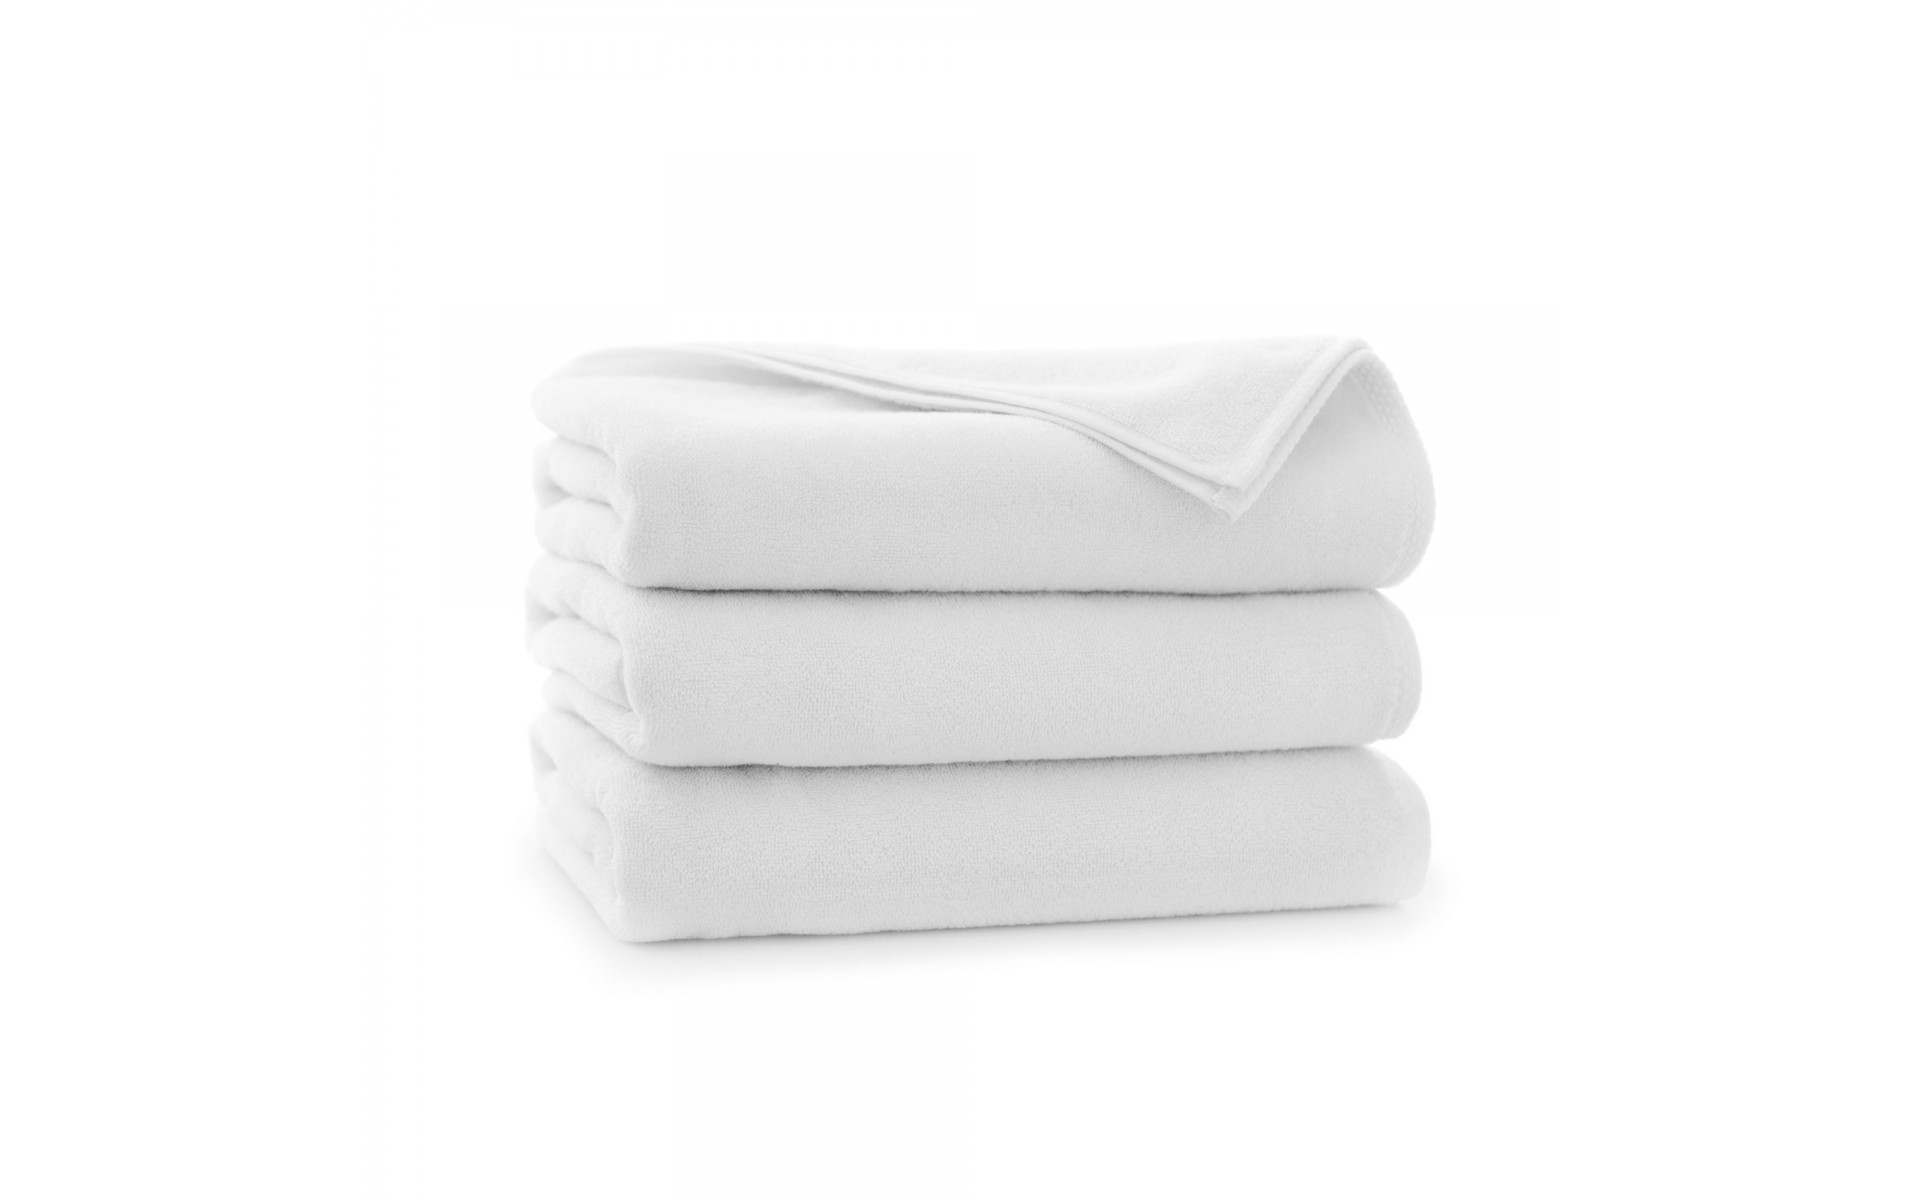 ręcznik HOTEL DOUBLE COMFORT biały - 6807